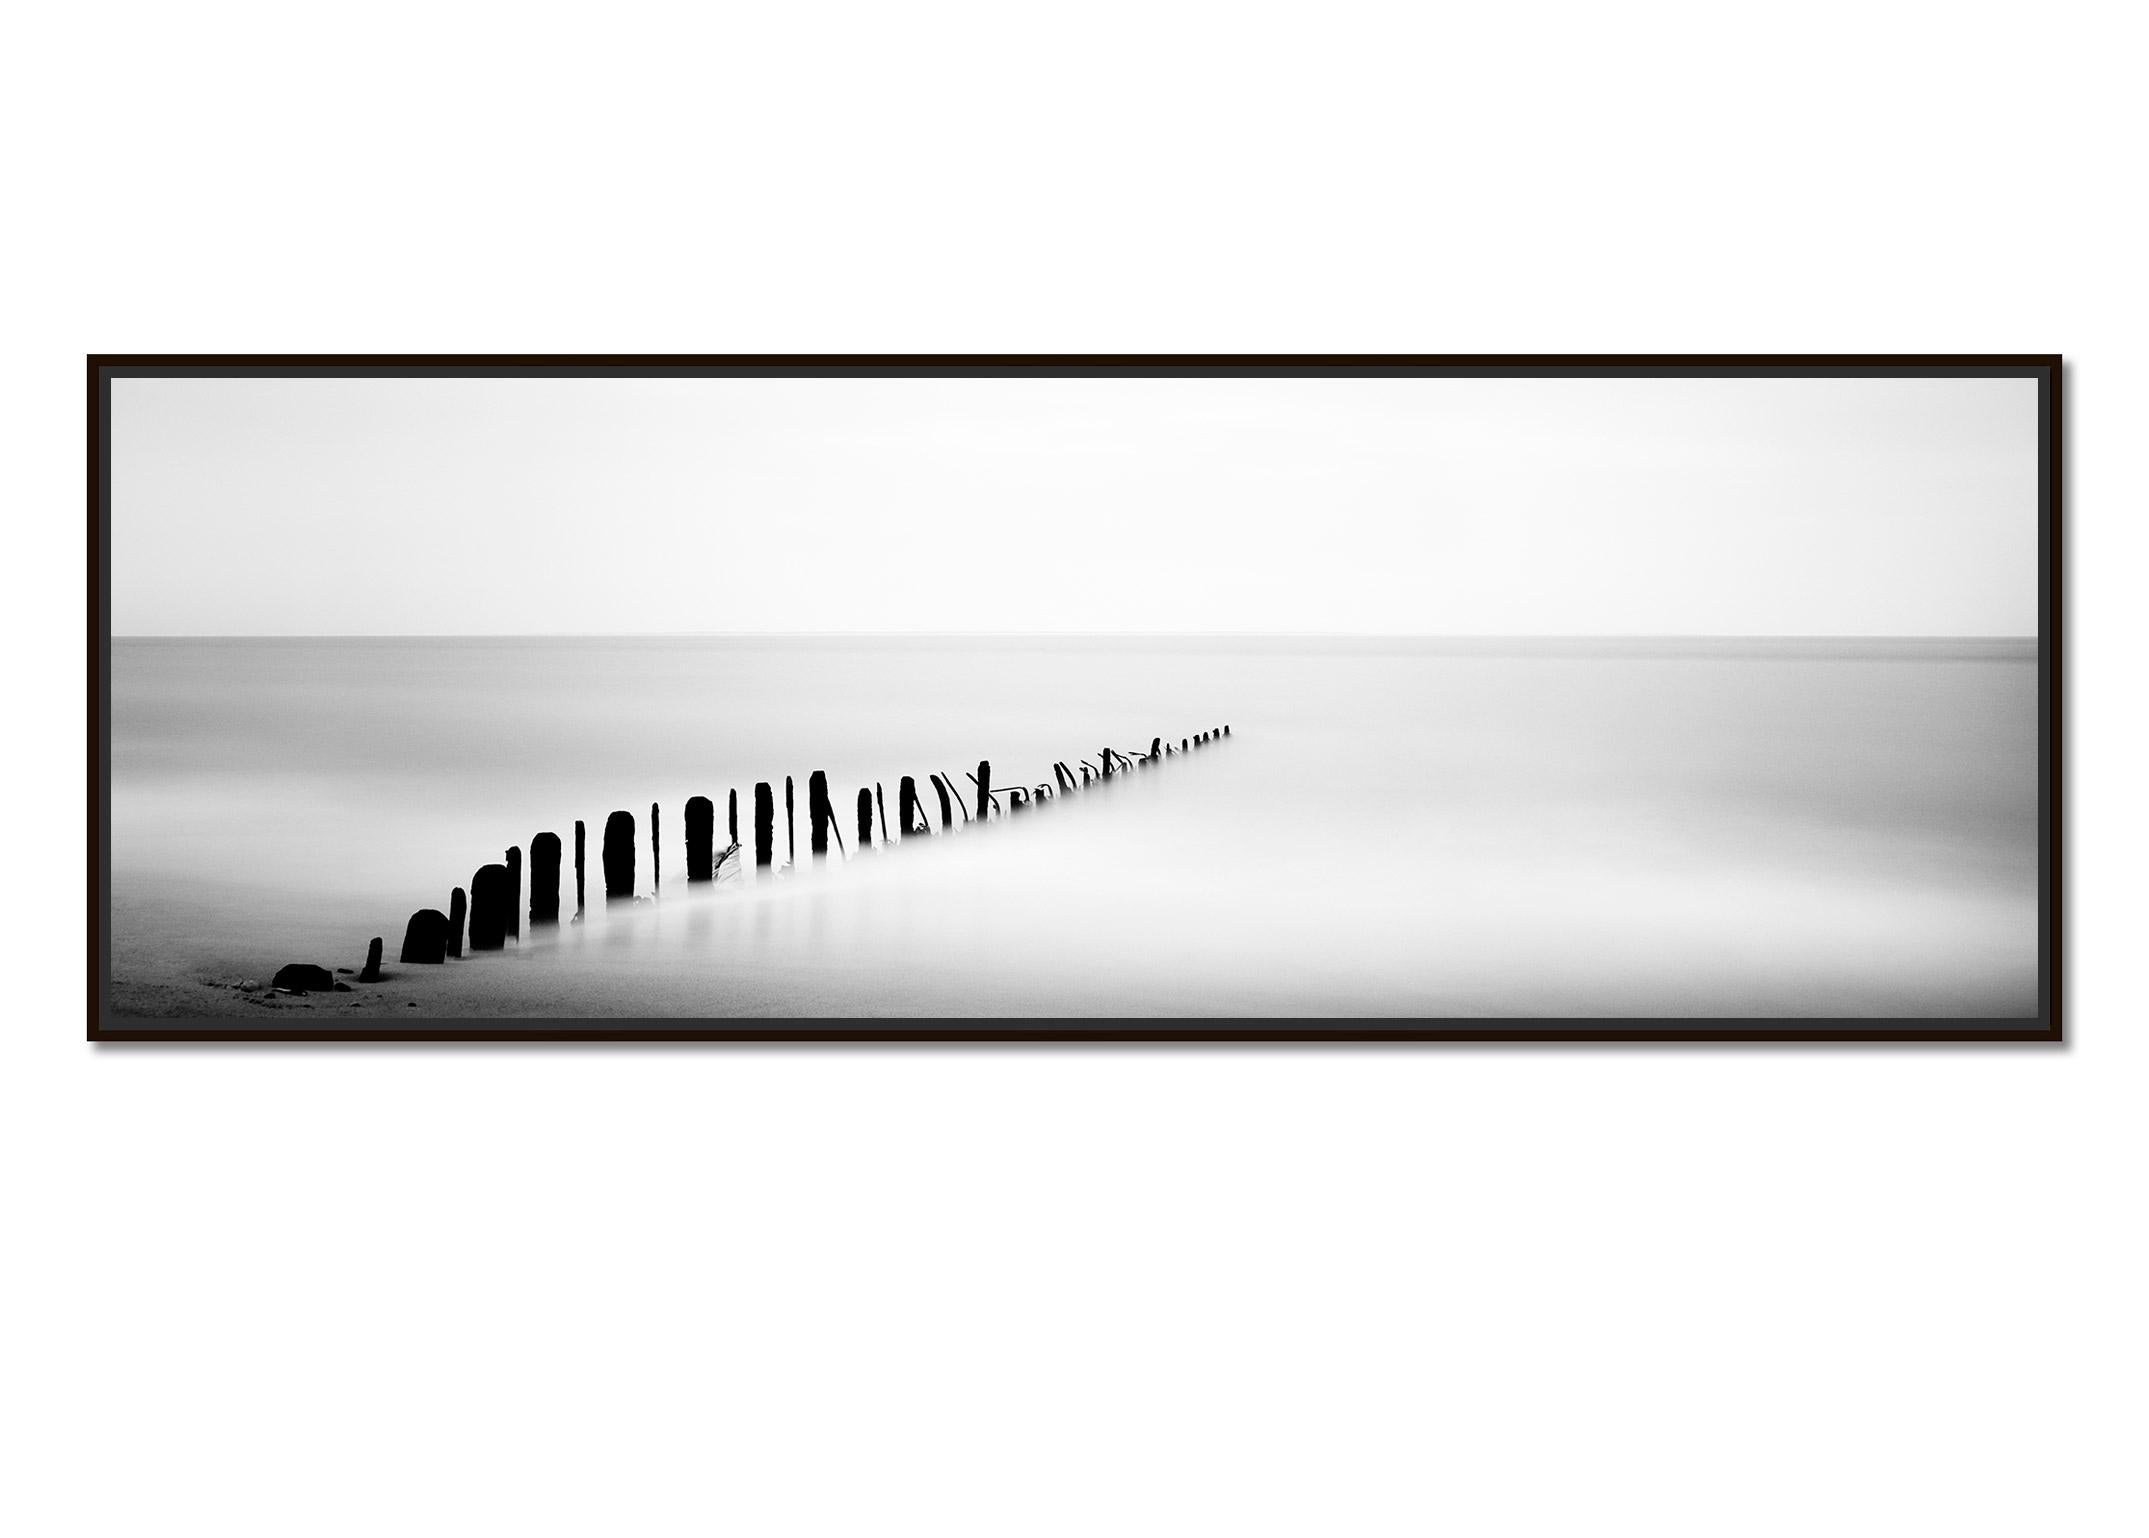  Panorama aus Eisen-Tees, Wellenbrecher, Sylt, Deutschland, Schwarz-Weiß-Kunstfotografie – Photograph von Gerald Berghammer